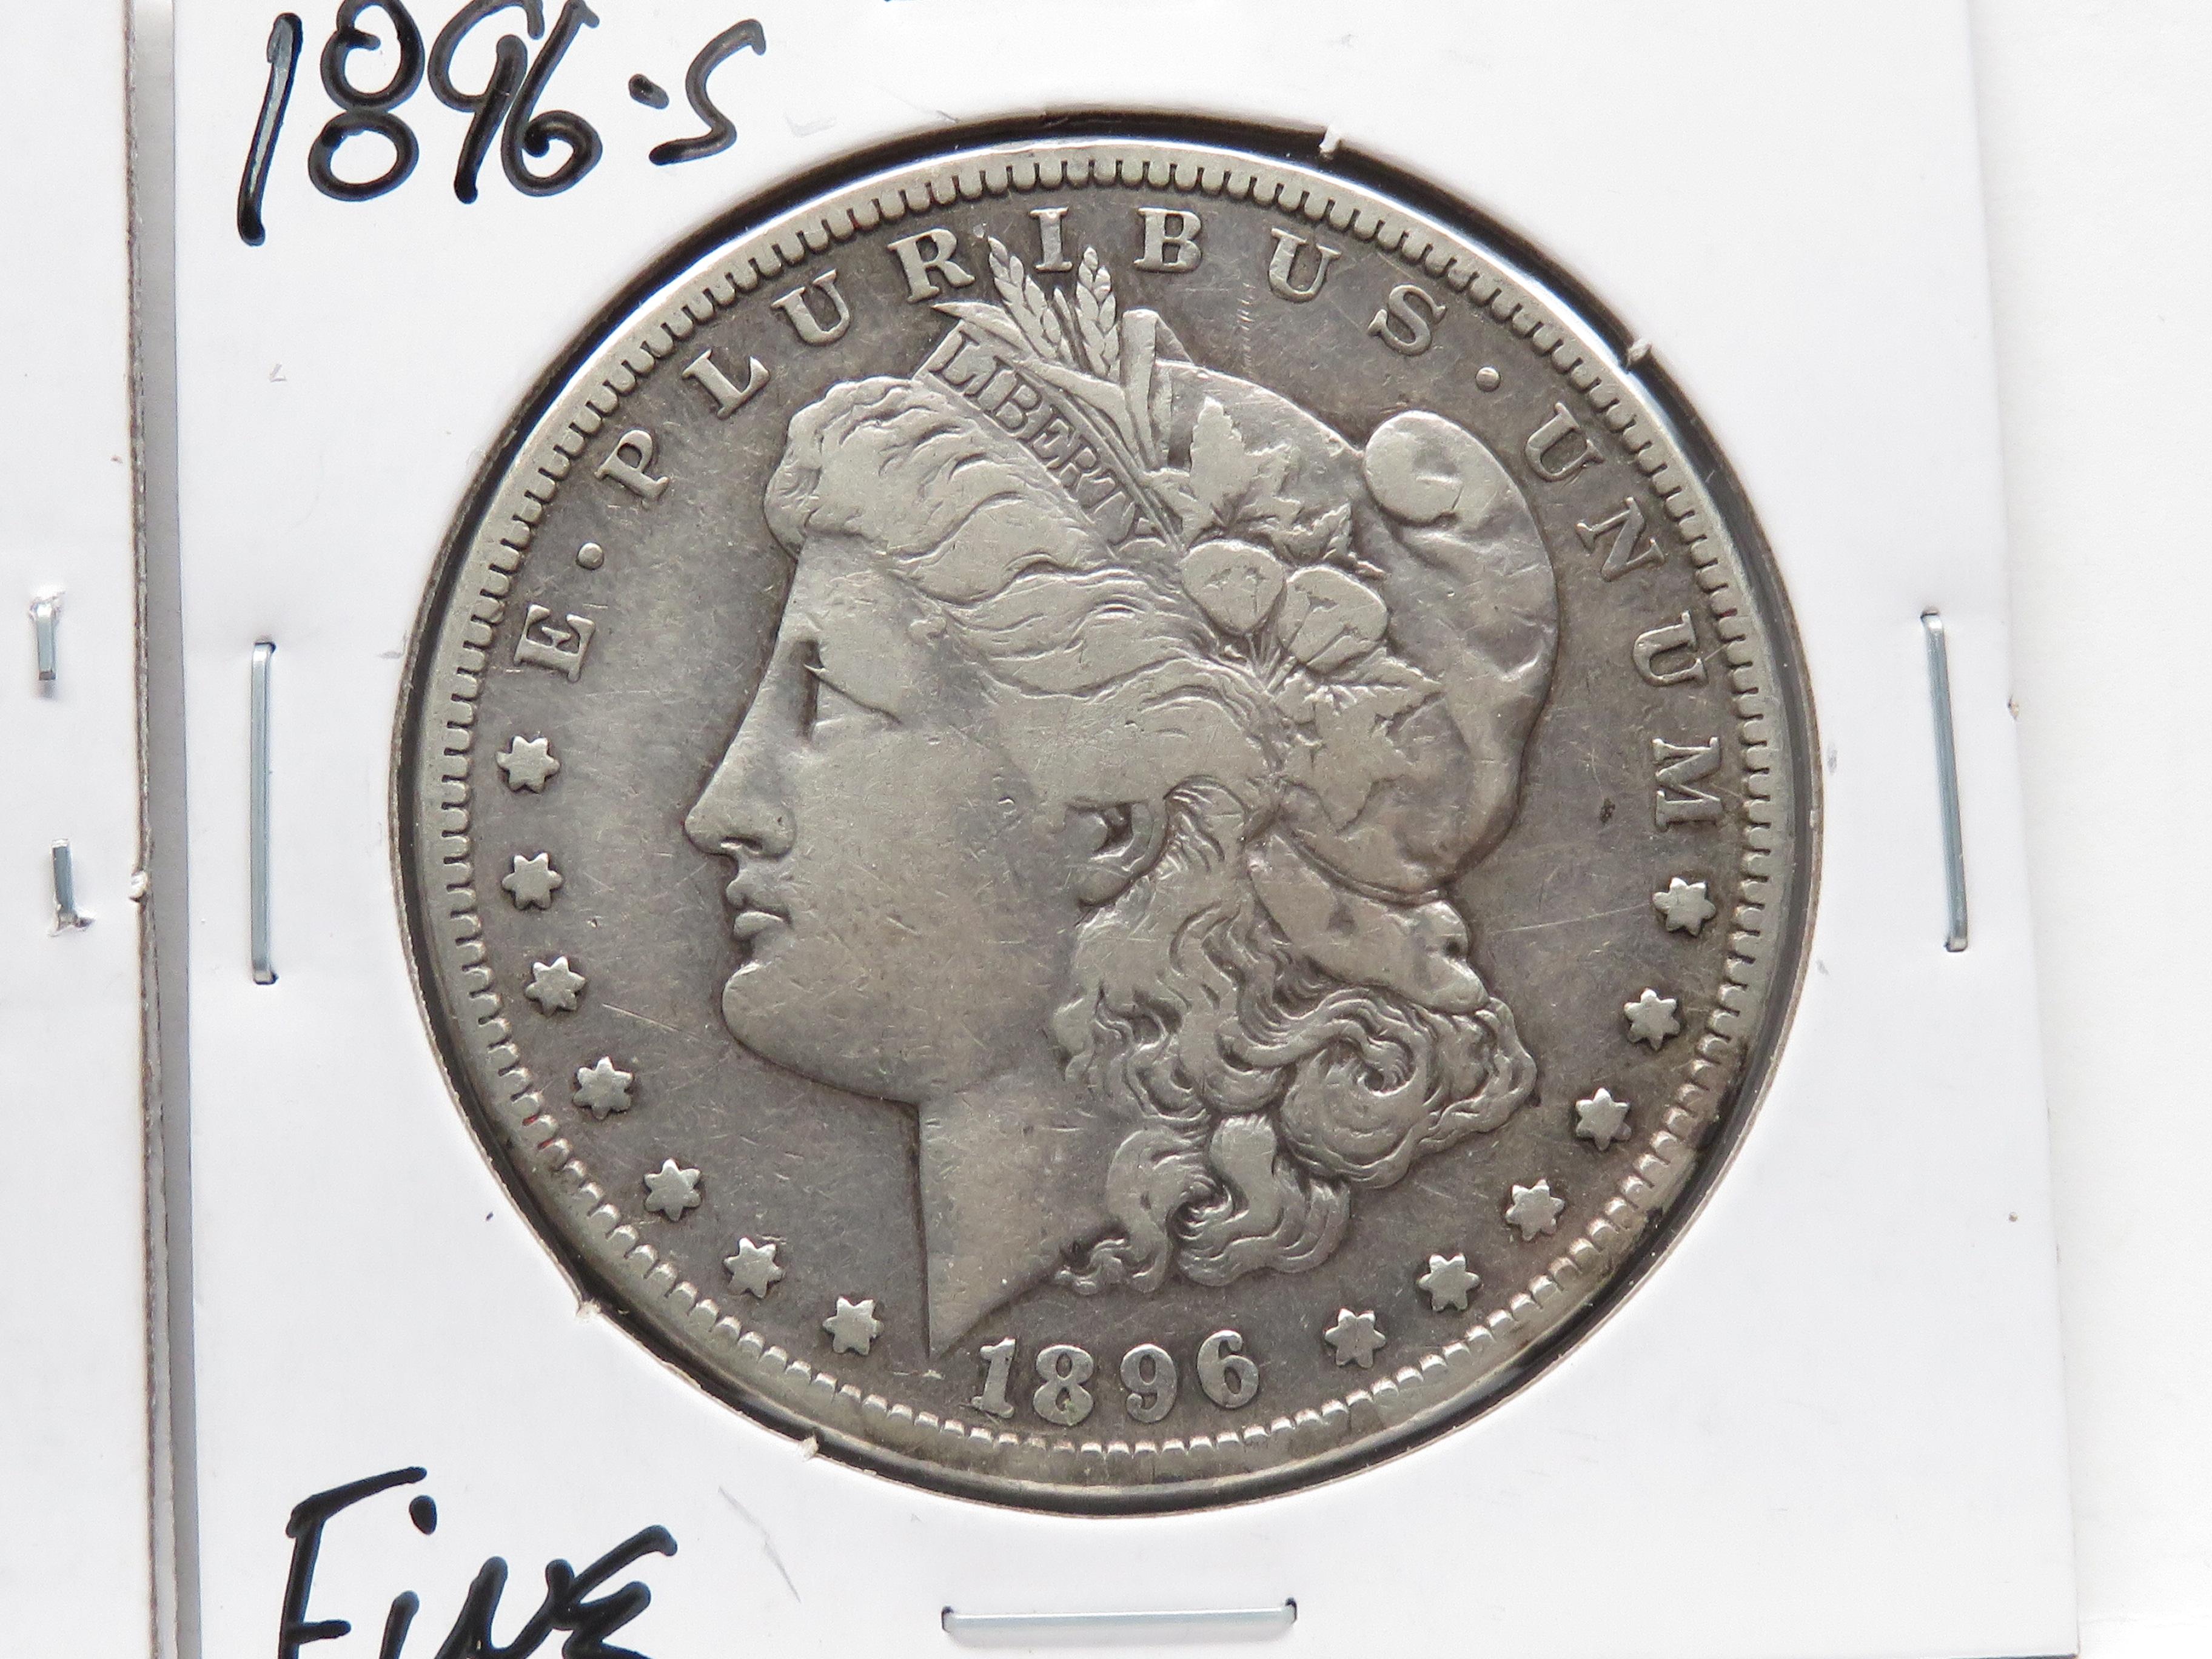 2 Morgan $: 1894-O VF better date, 1896S Fine